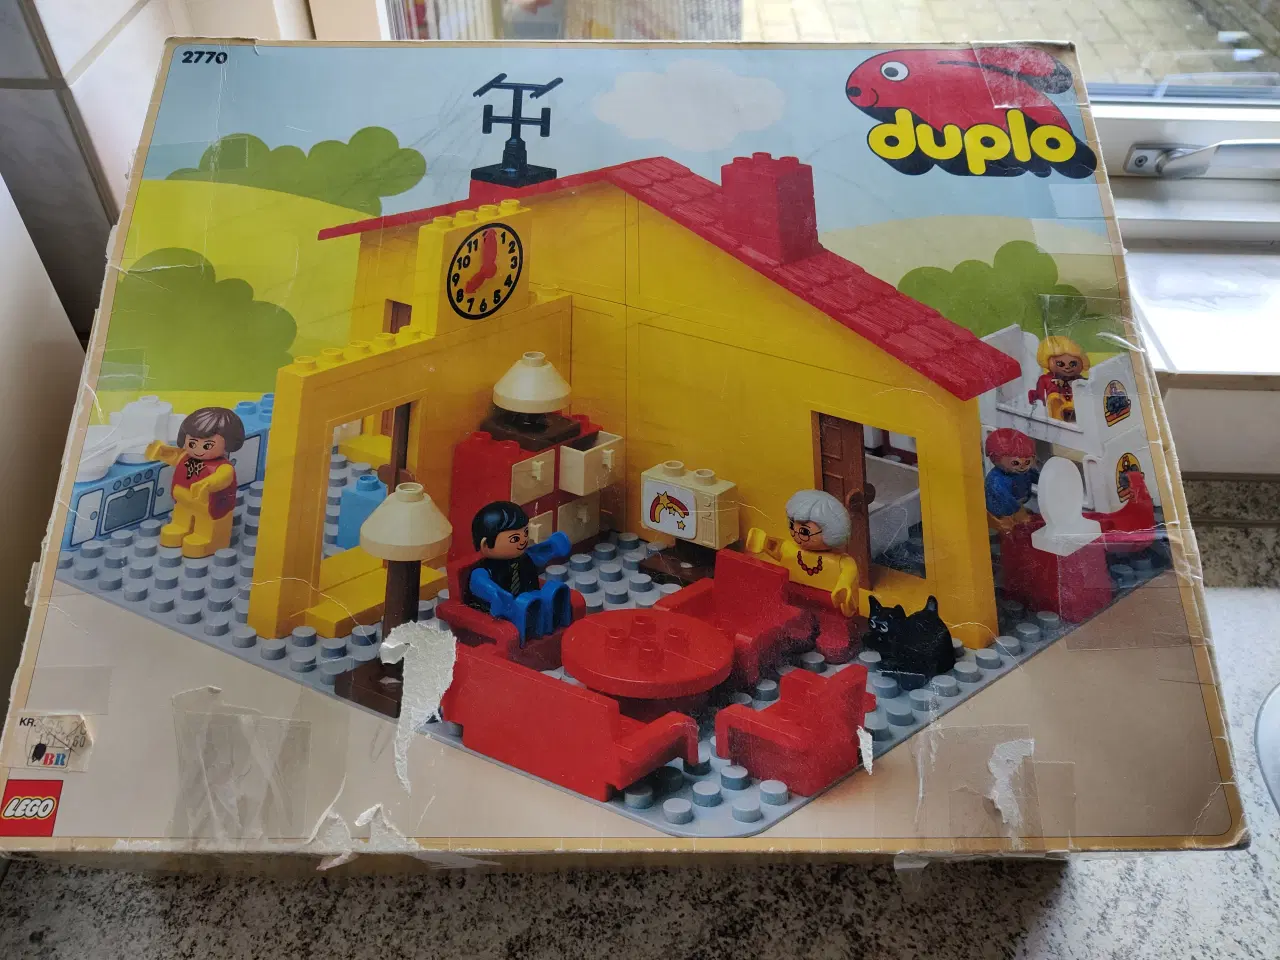 Billede 1 - Lego Duplo 2770 - velholdt hus/dukkehus